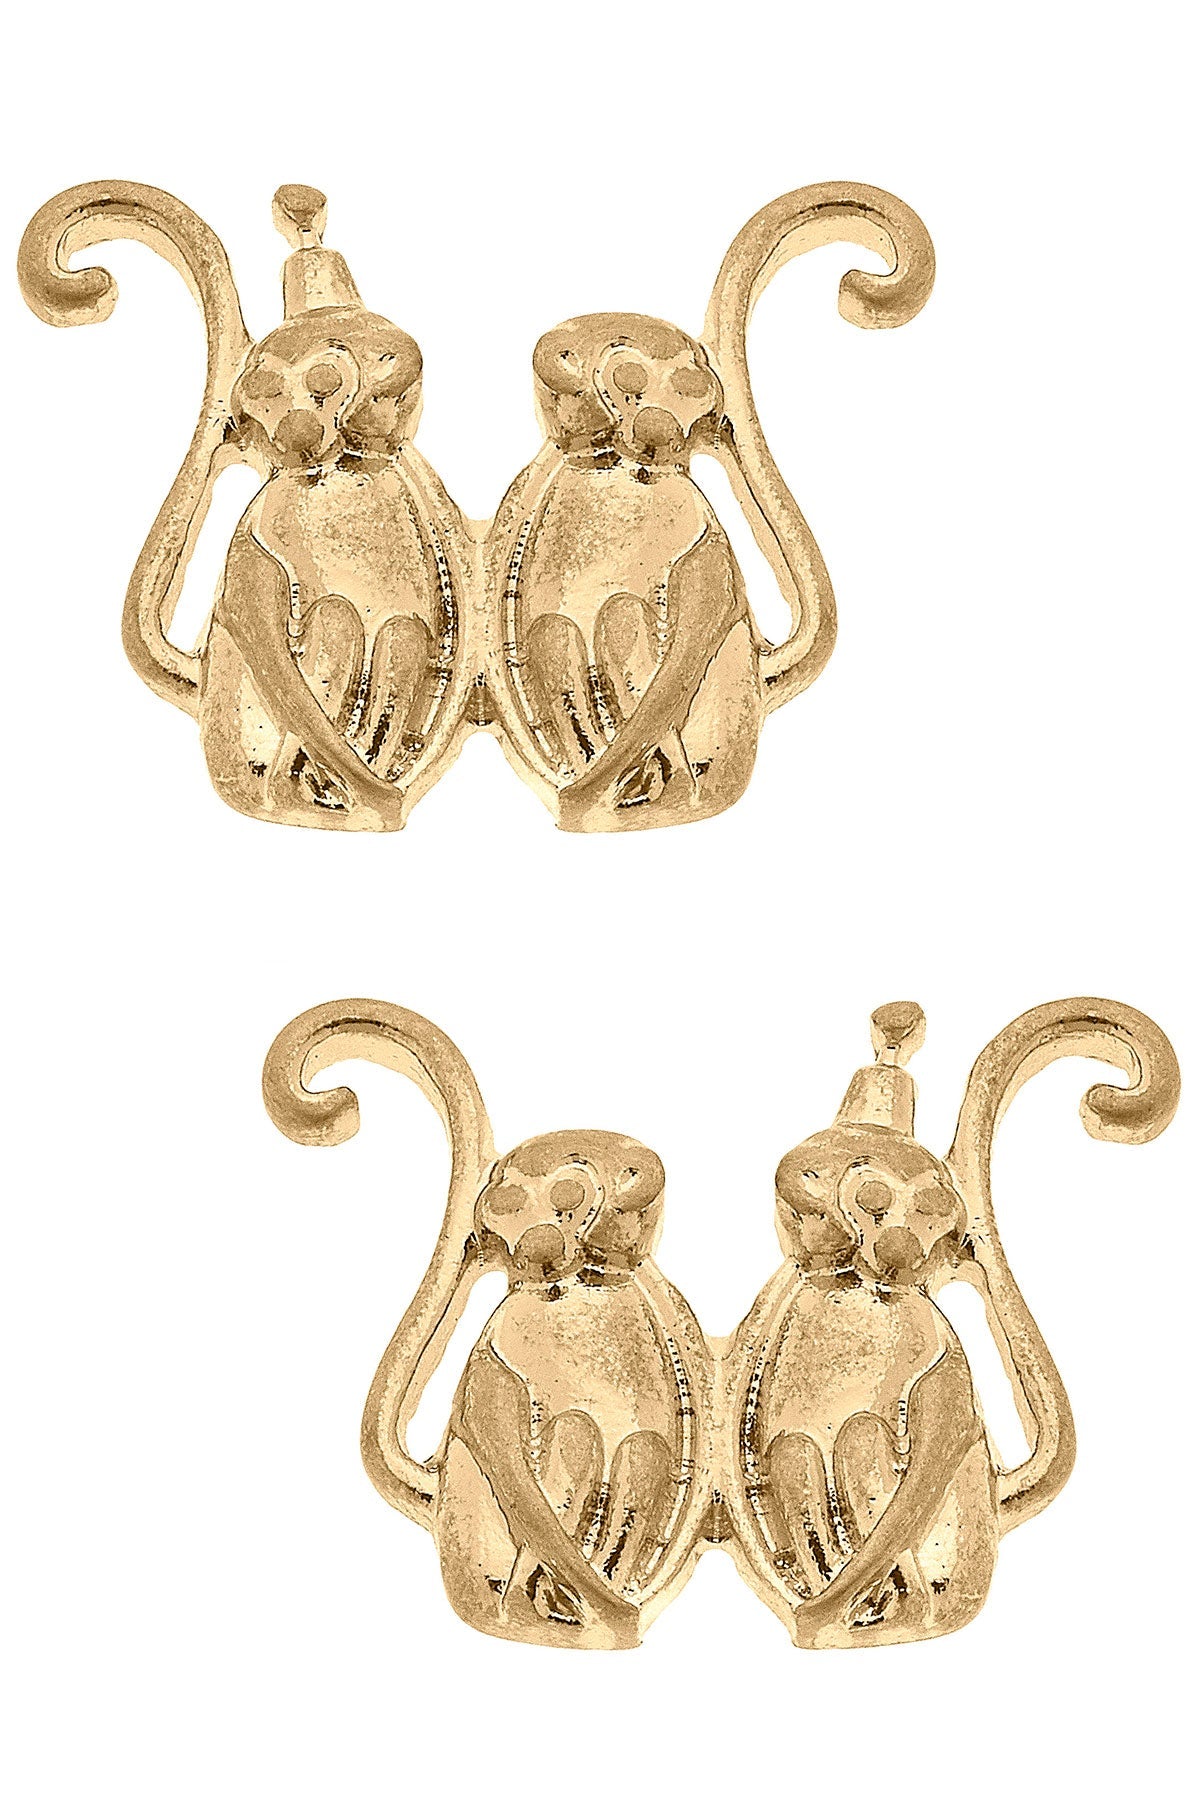 Taylor Monkey Stud Earrings in Worn Gold